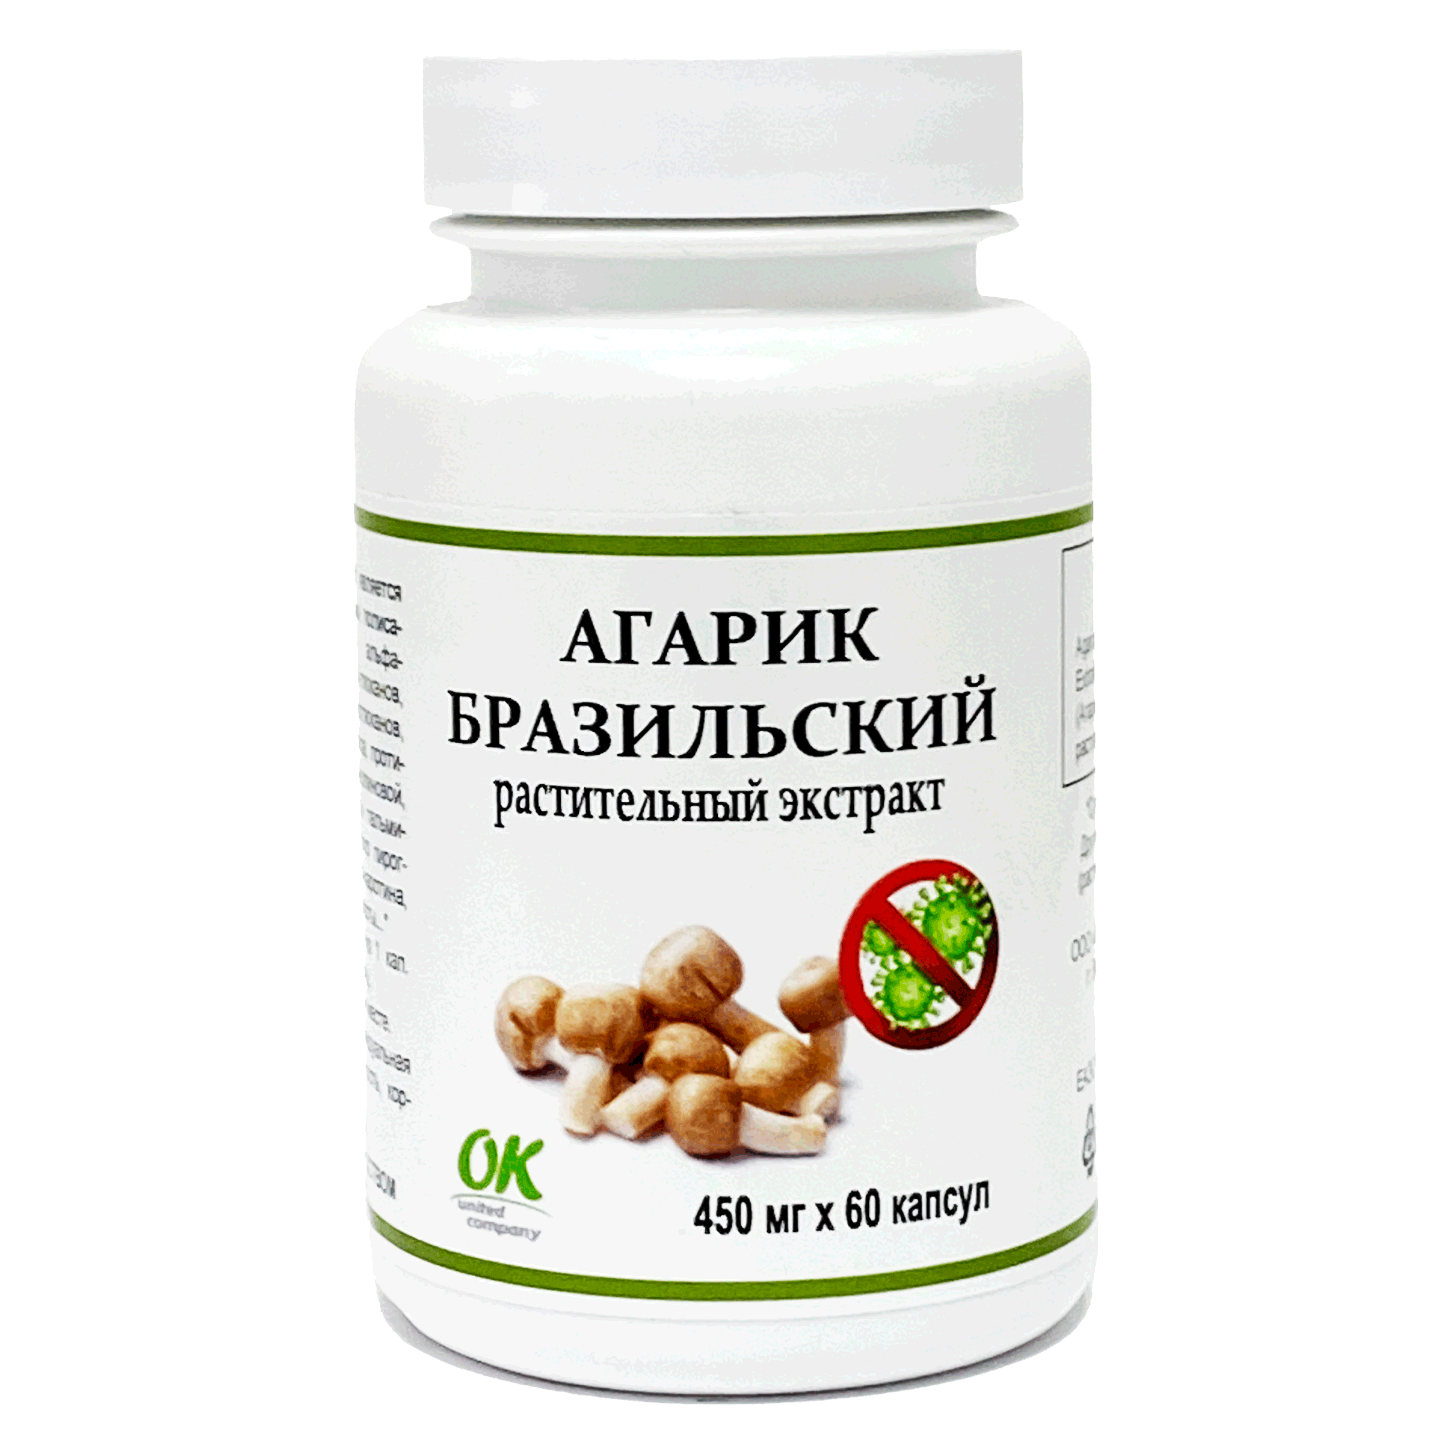 Биологически активная добавка ОК Агарик Бразильский, 450 мг, 60 капсул